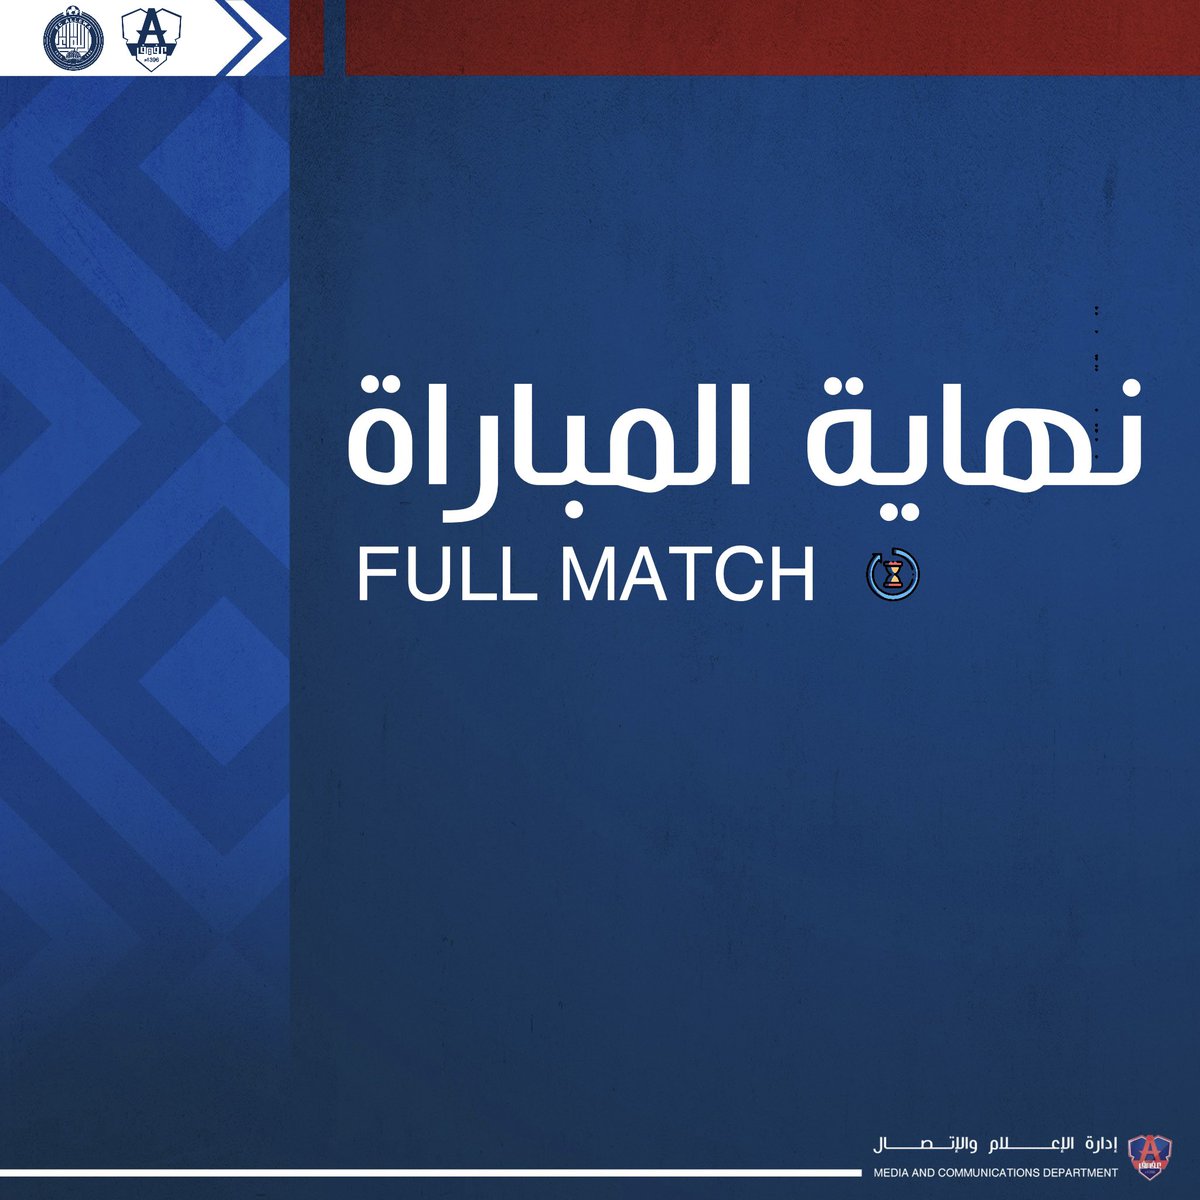 نهاية المباراة بفوز #نادي_عفيف على نادي اللواء 3-1 ⚽️⚽️ ساكالا ⚽️ زافين